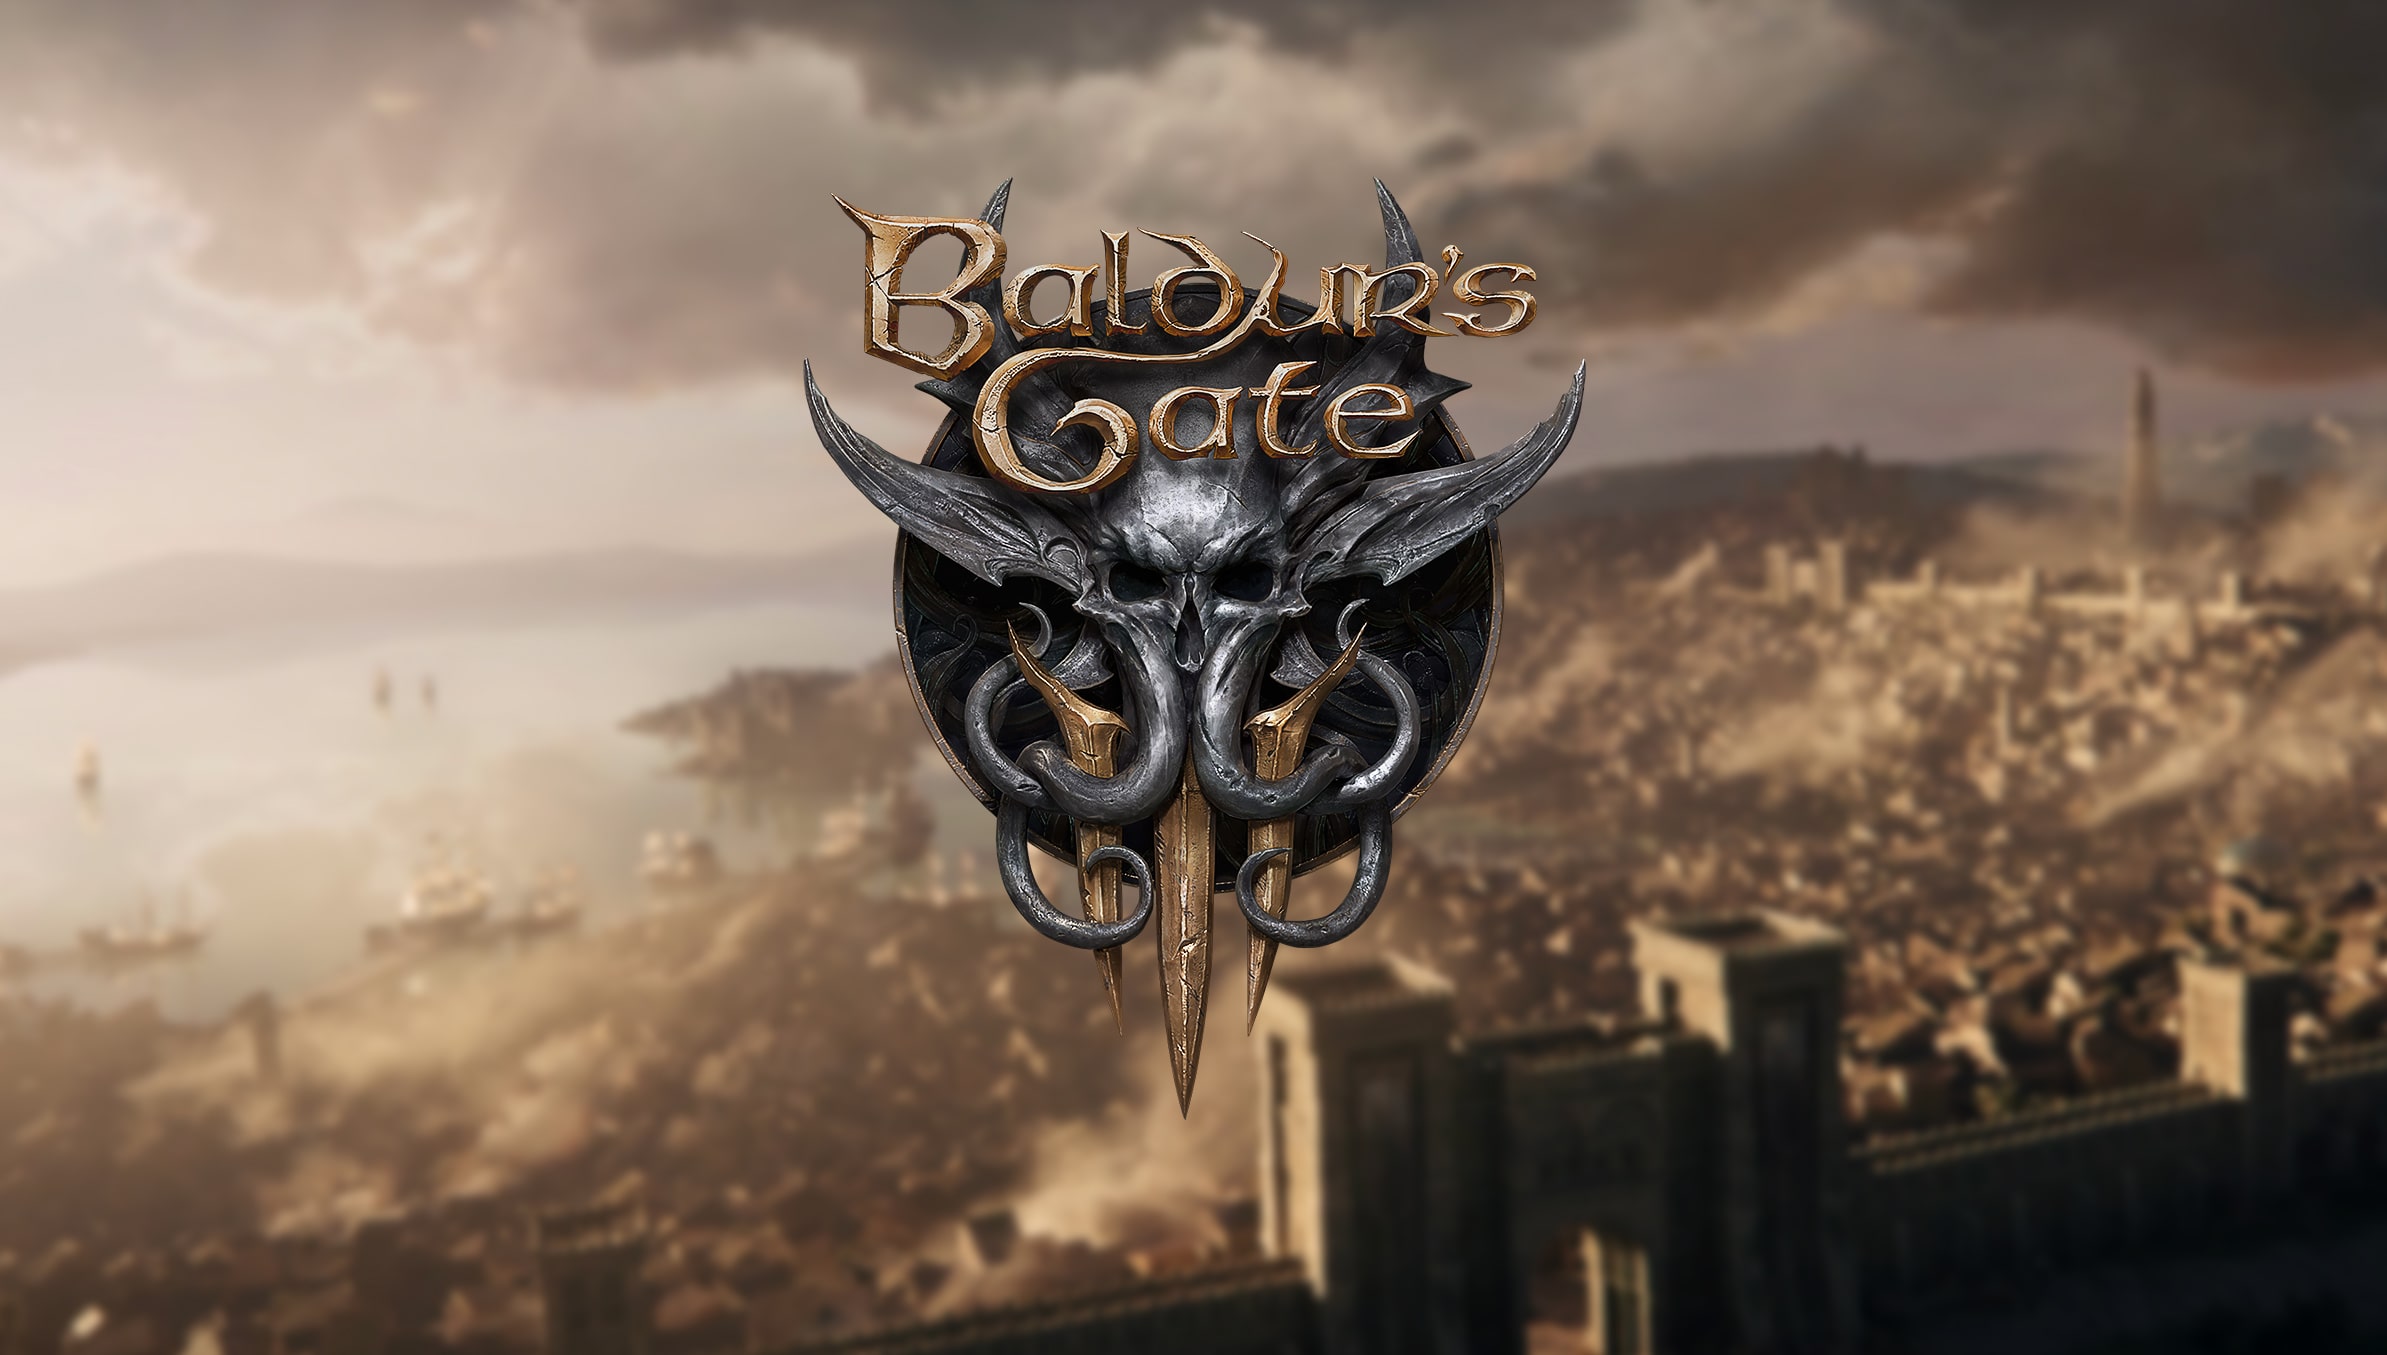 baldurs gate 3 release date